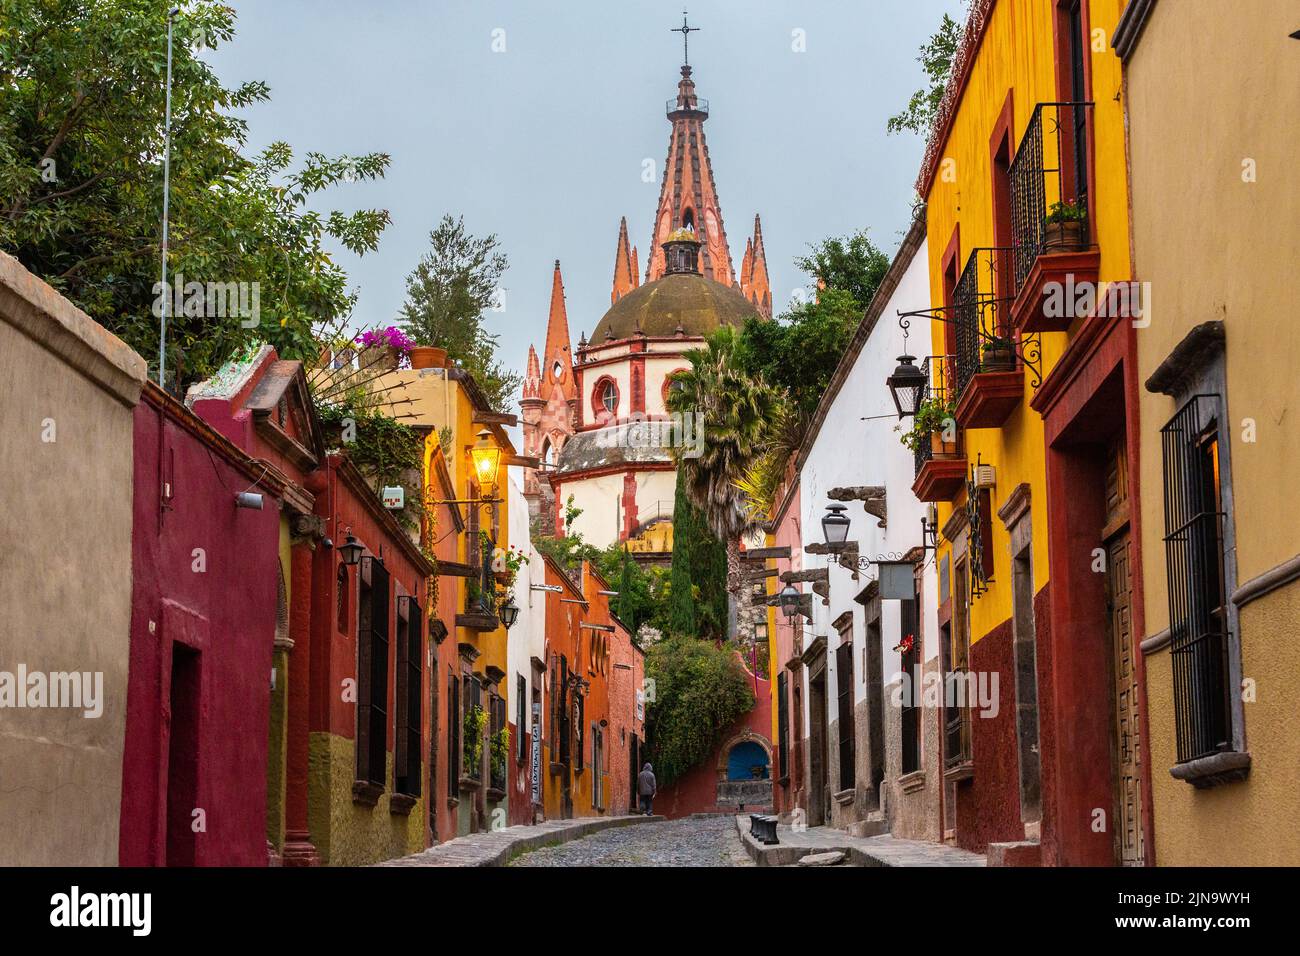 En début de matinée, vue sur la Calle Aldama, pavée, et la tour de la barque originale de Parroquia de San Miguel Arcangel, dans le centre-ville historique de San Miguel de Allende, Mexique. Banque D'Images